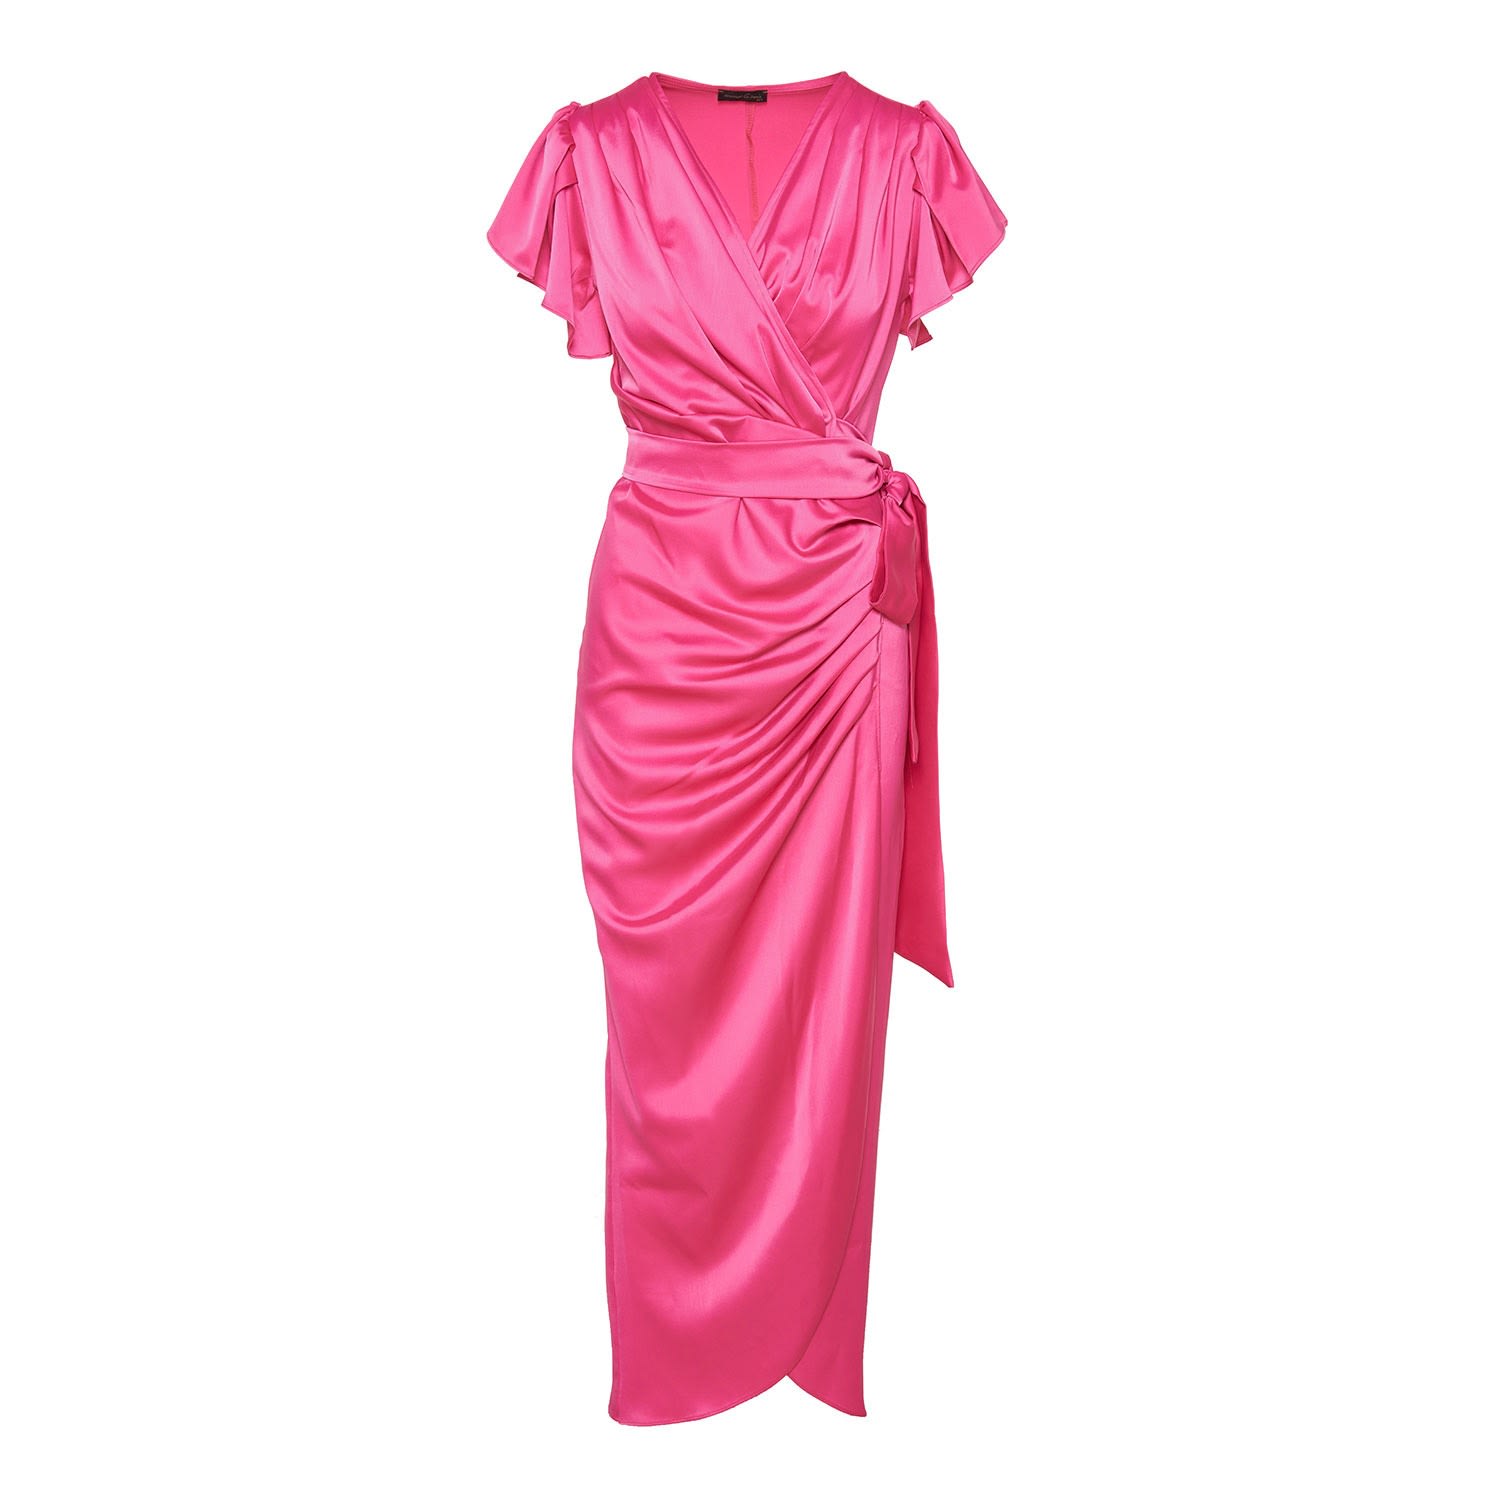 Women’s Pink / Purple Wrap Cocktail Pink Long Dress Xs/S Concept a Trois